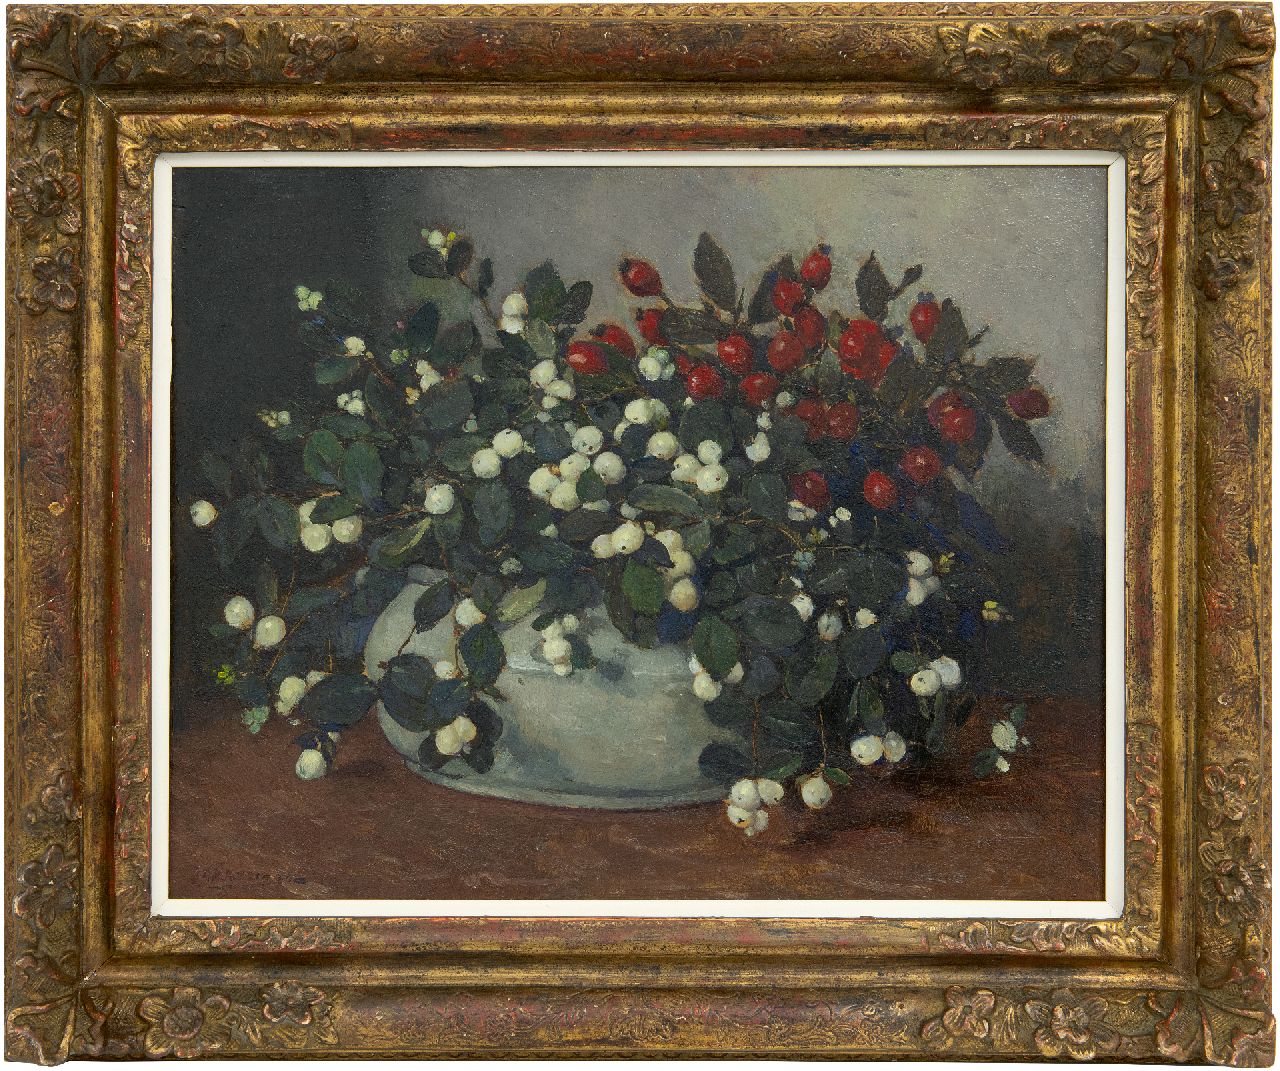 Akkeringa J.E.H.  | 'Johannes Evert' Hendrik Akkeringa, Sneeuwbessen en rozenbottels in witte vaas, olieverf op paneel 34,0 x 42,1 cm, gesigneerd linksonder